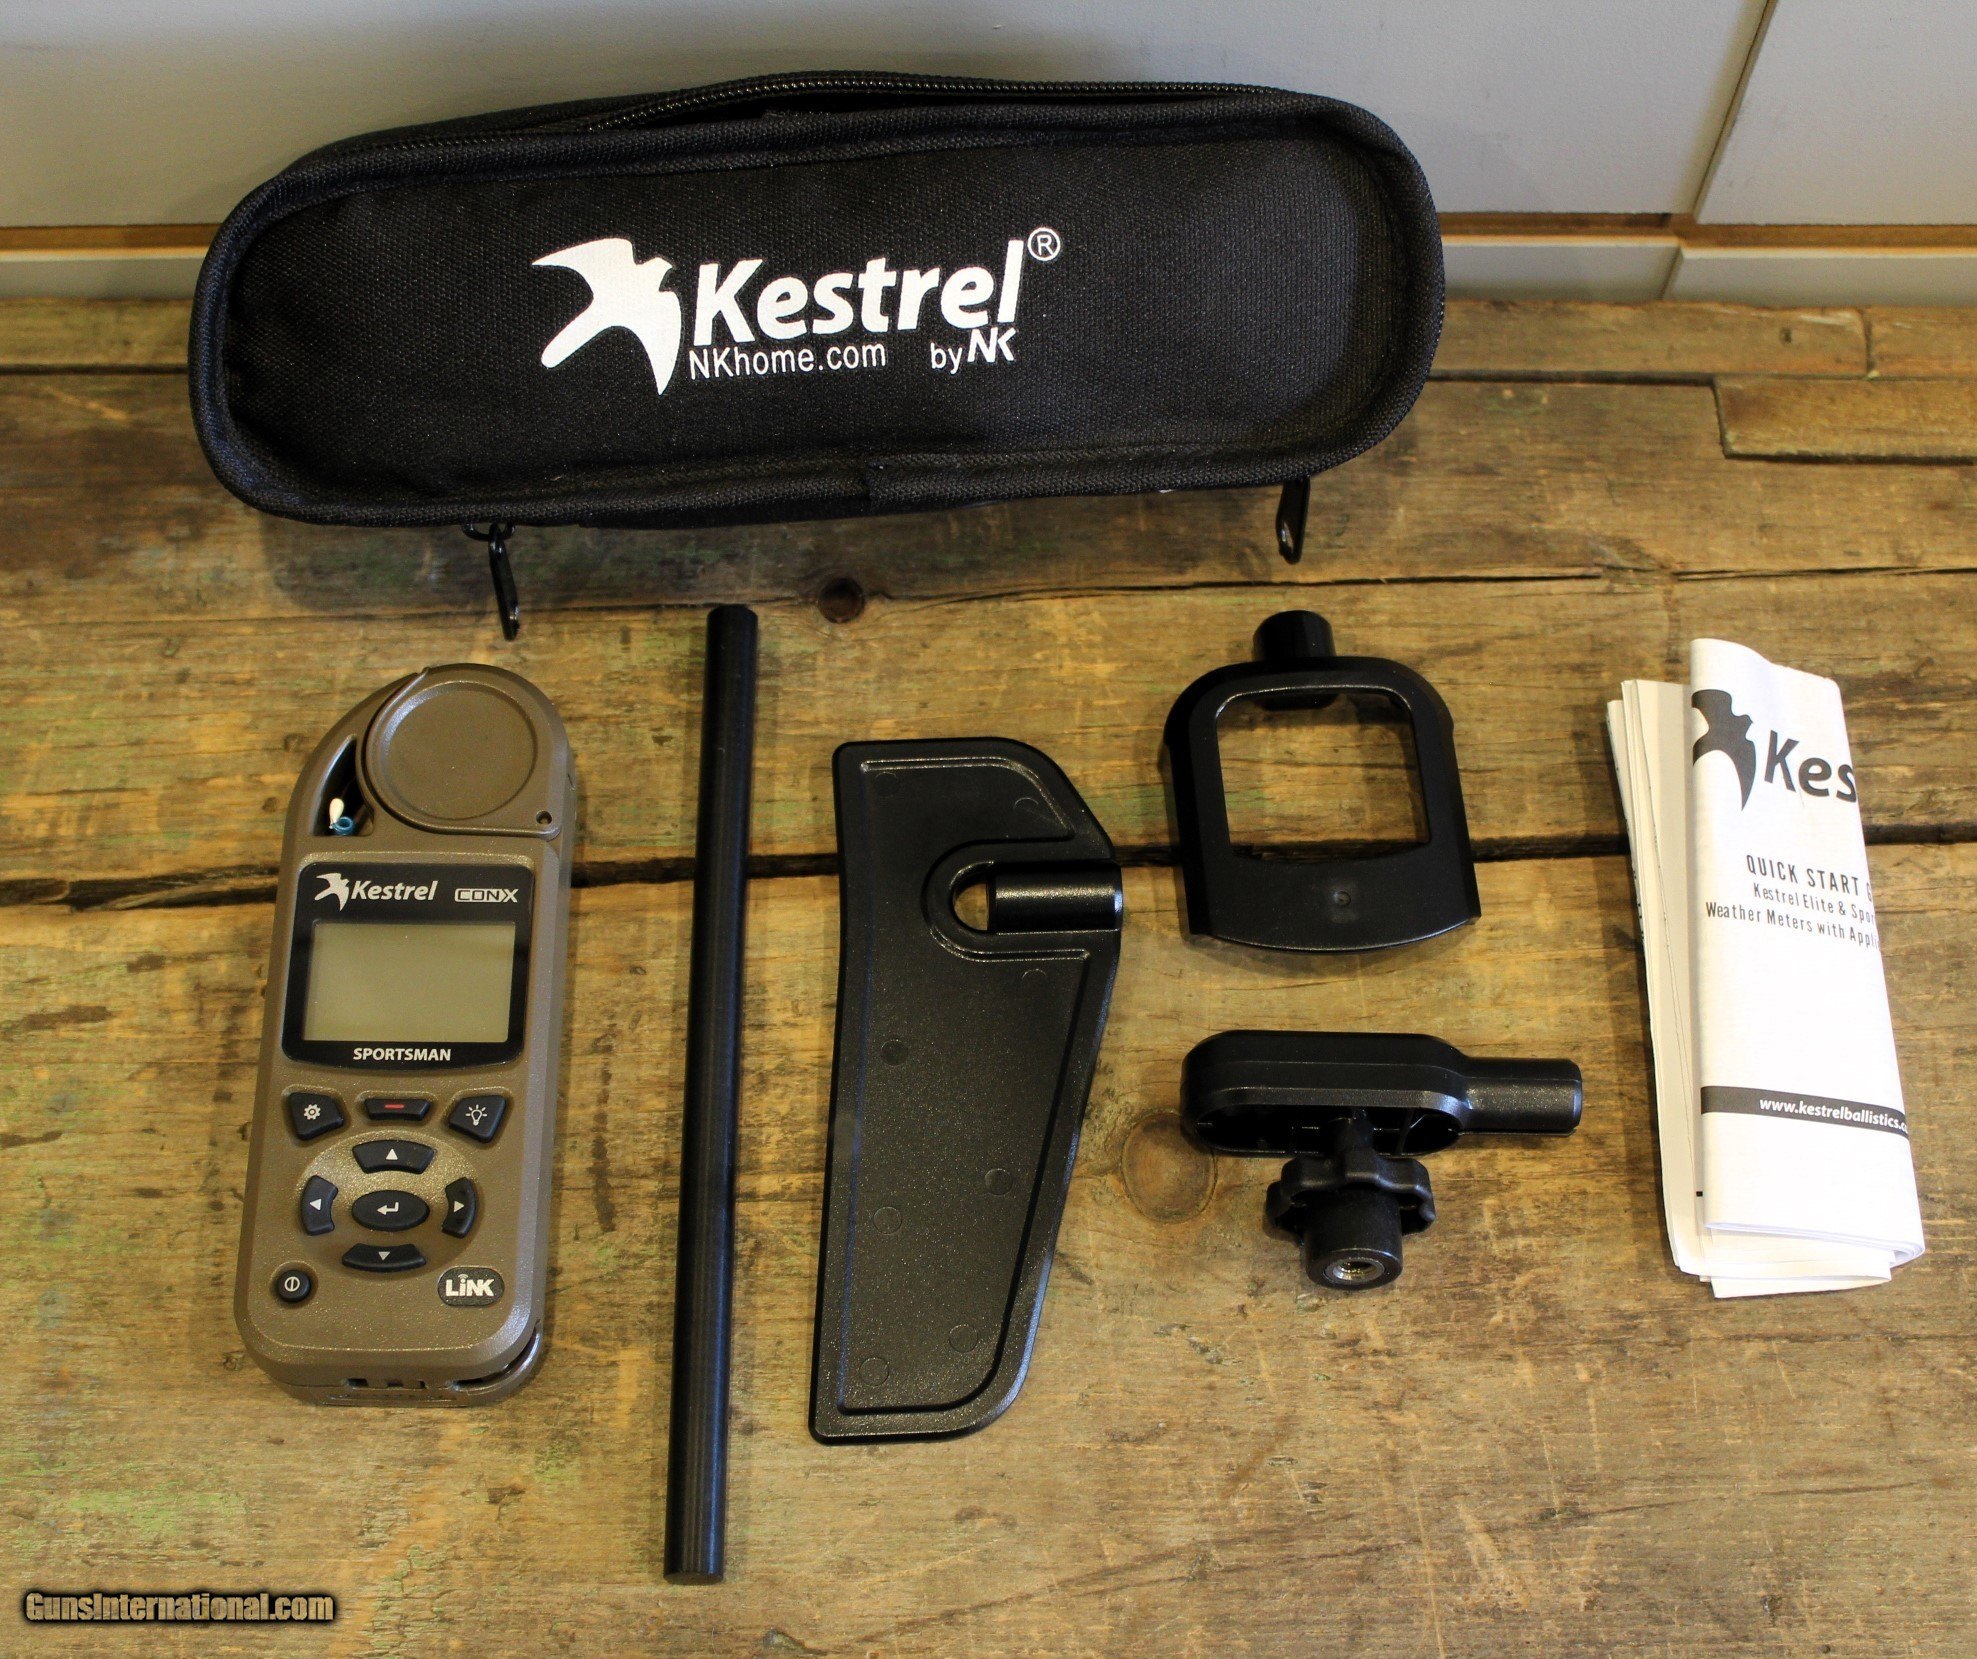 Kestrel LiNK Wireless Dongle for PC or Mac, Kestrel 5 Series